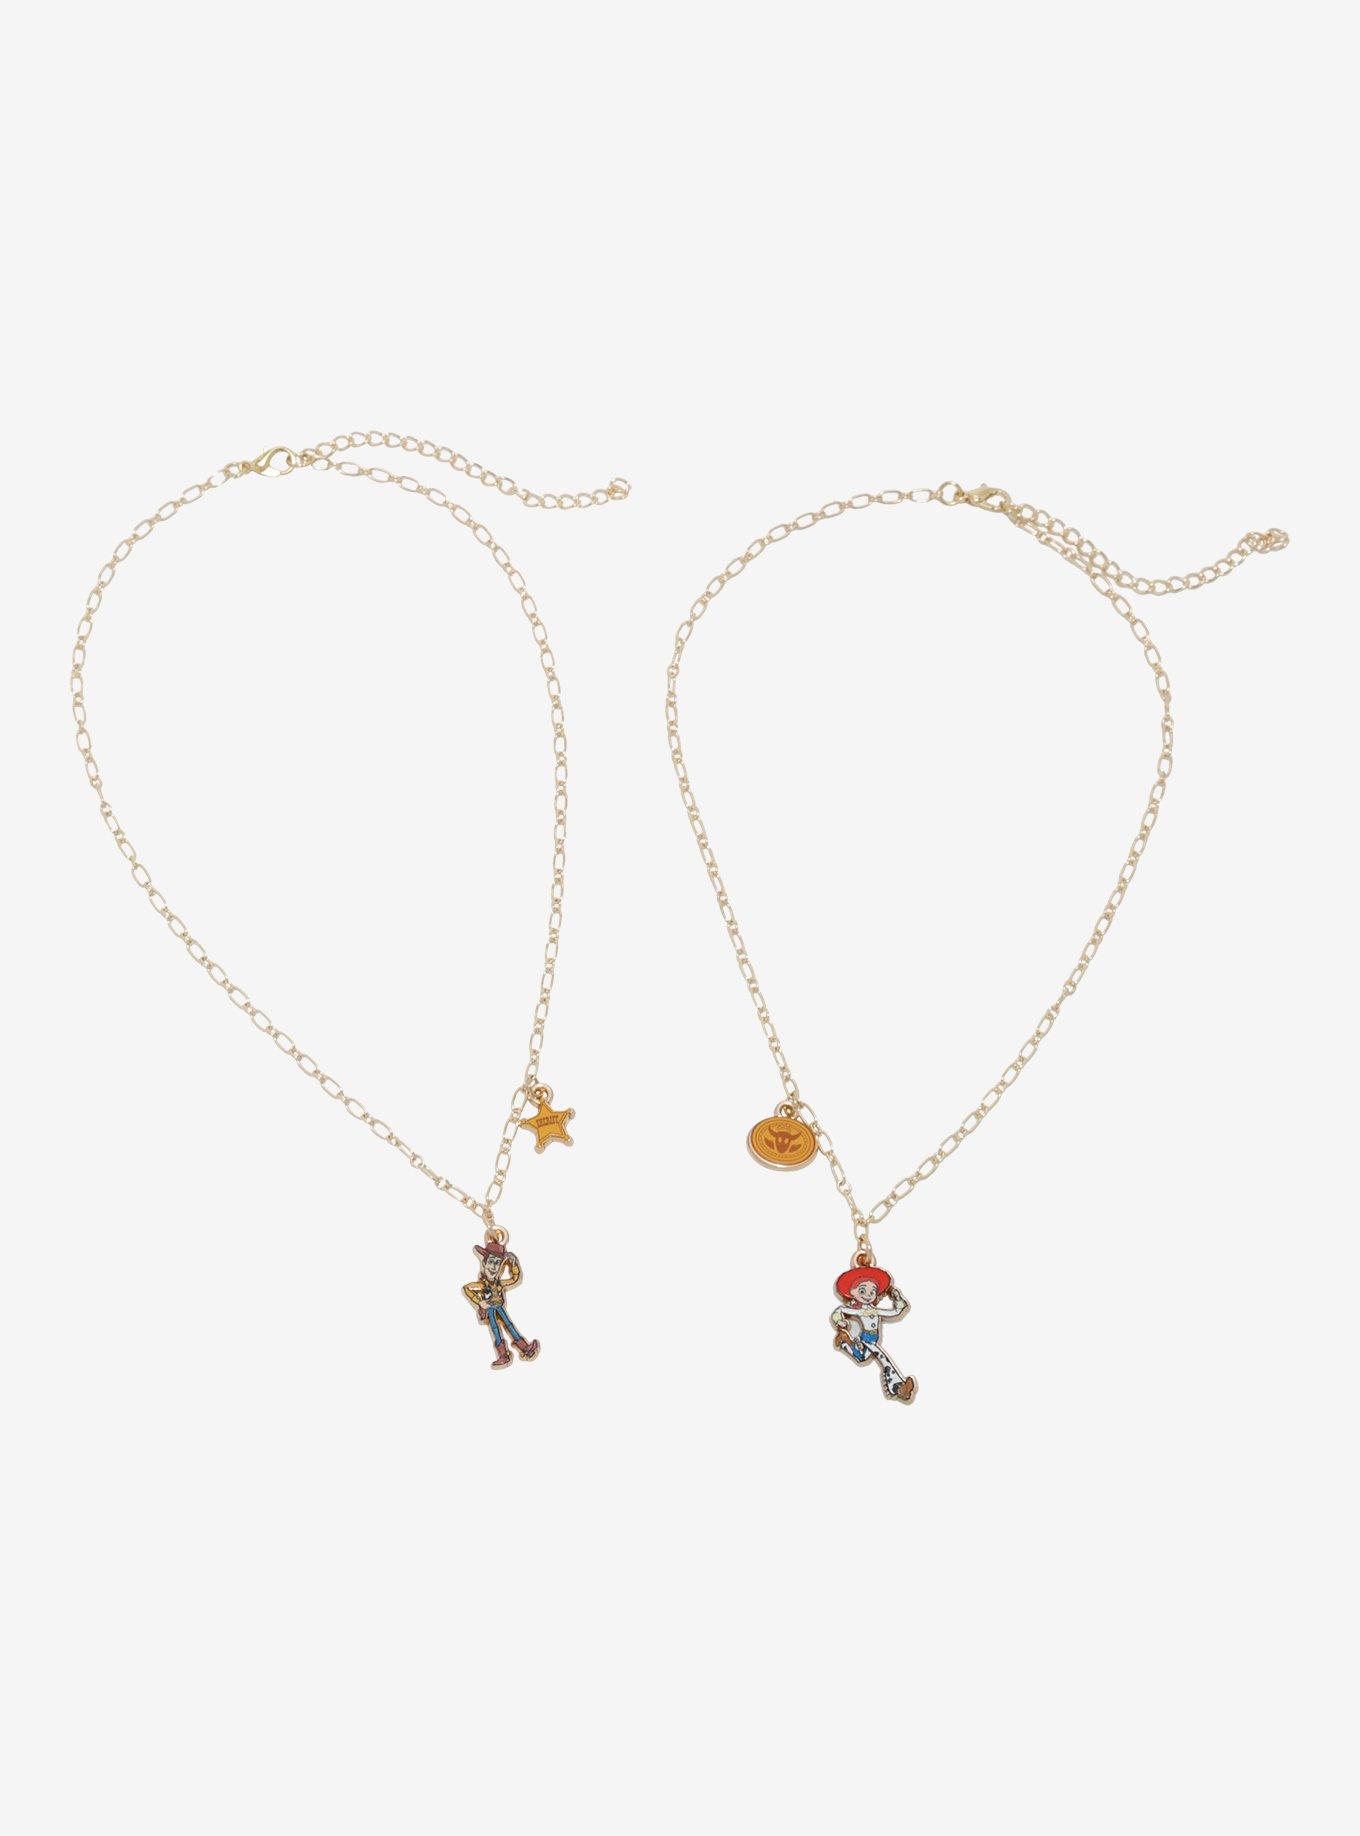 Disney Pixar Toy Story Woody & Jessie Best Friend Necklace Set